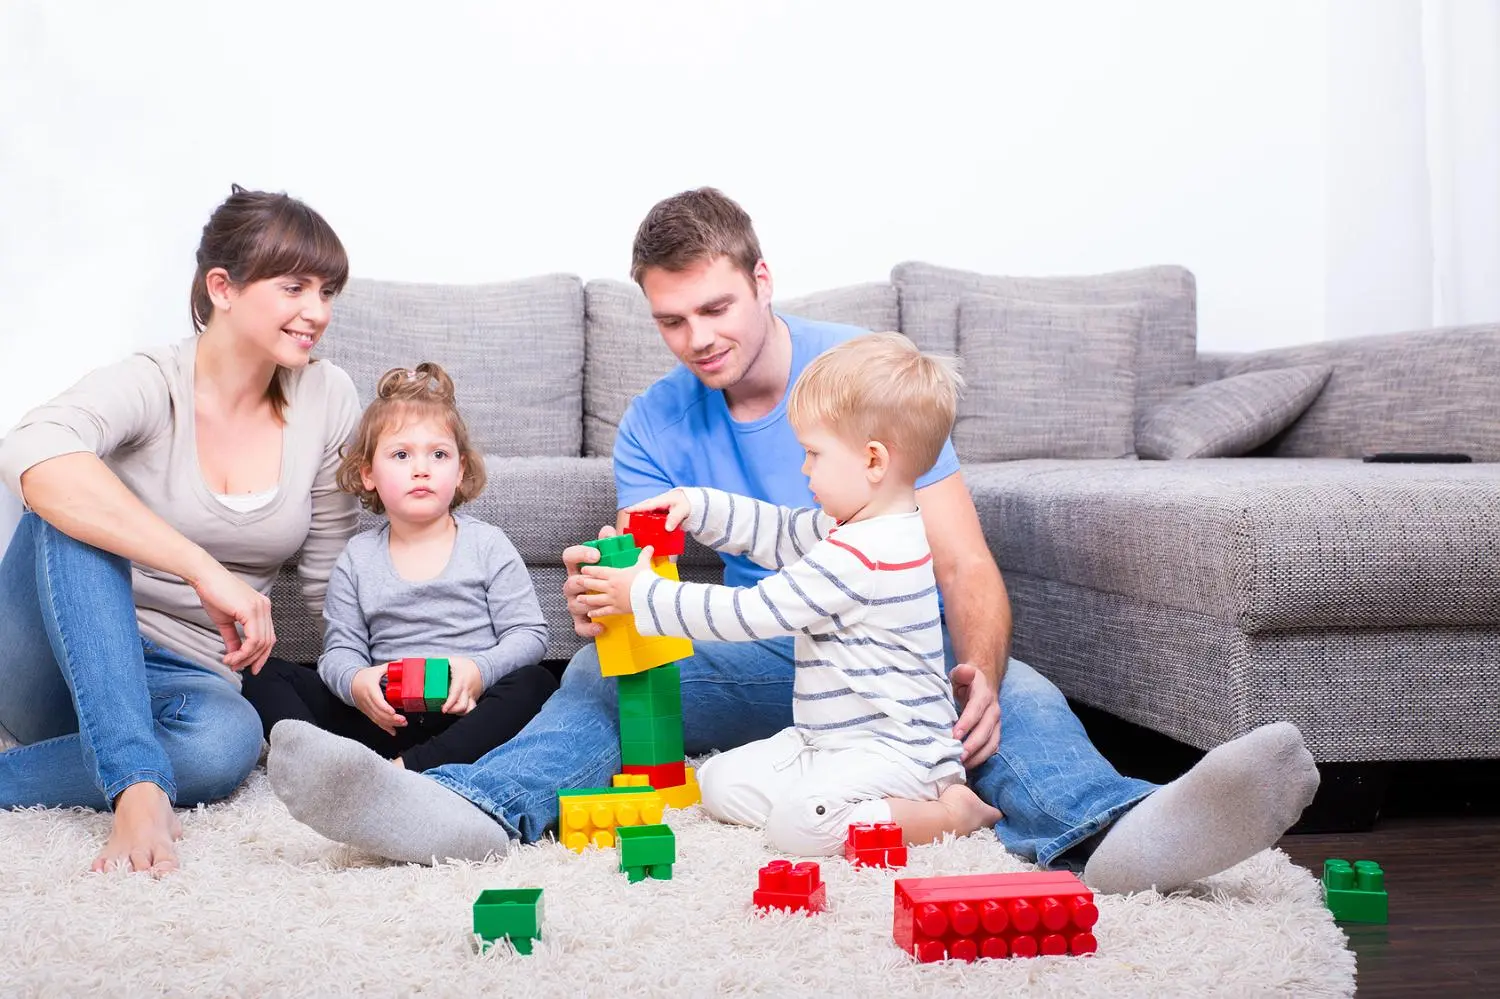 imagenes de padres jugando con sus hijos - Que quieren los padres para sus hijos